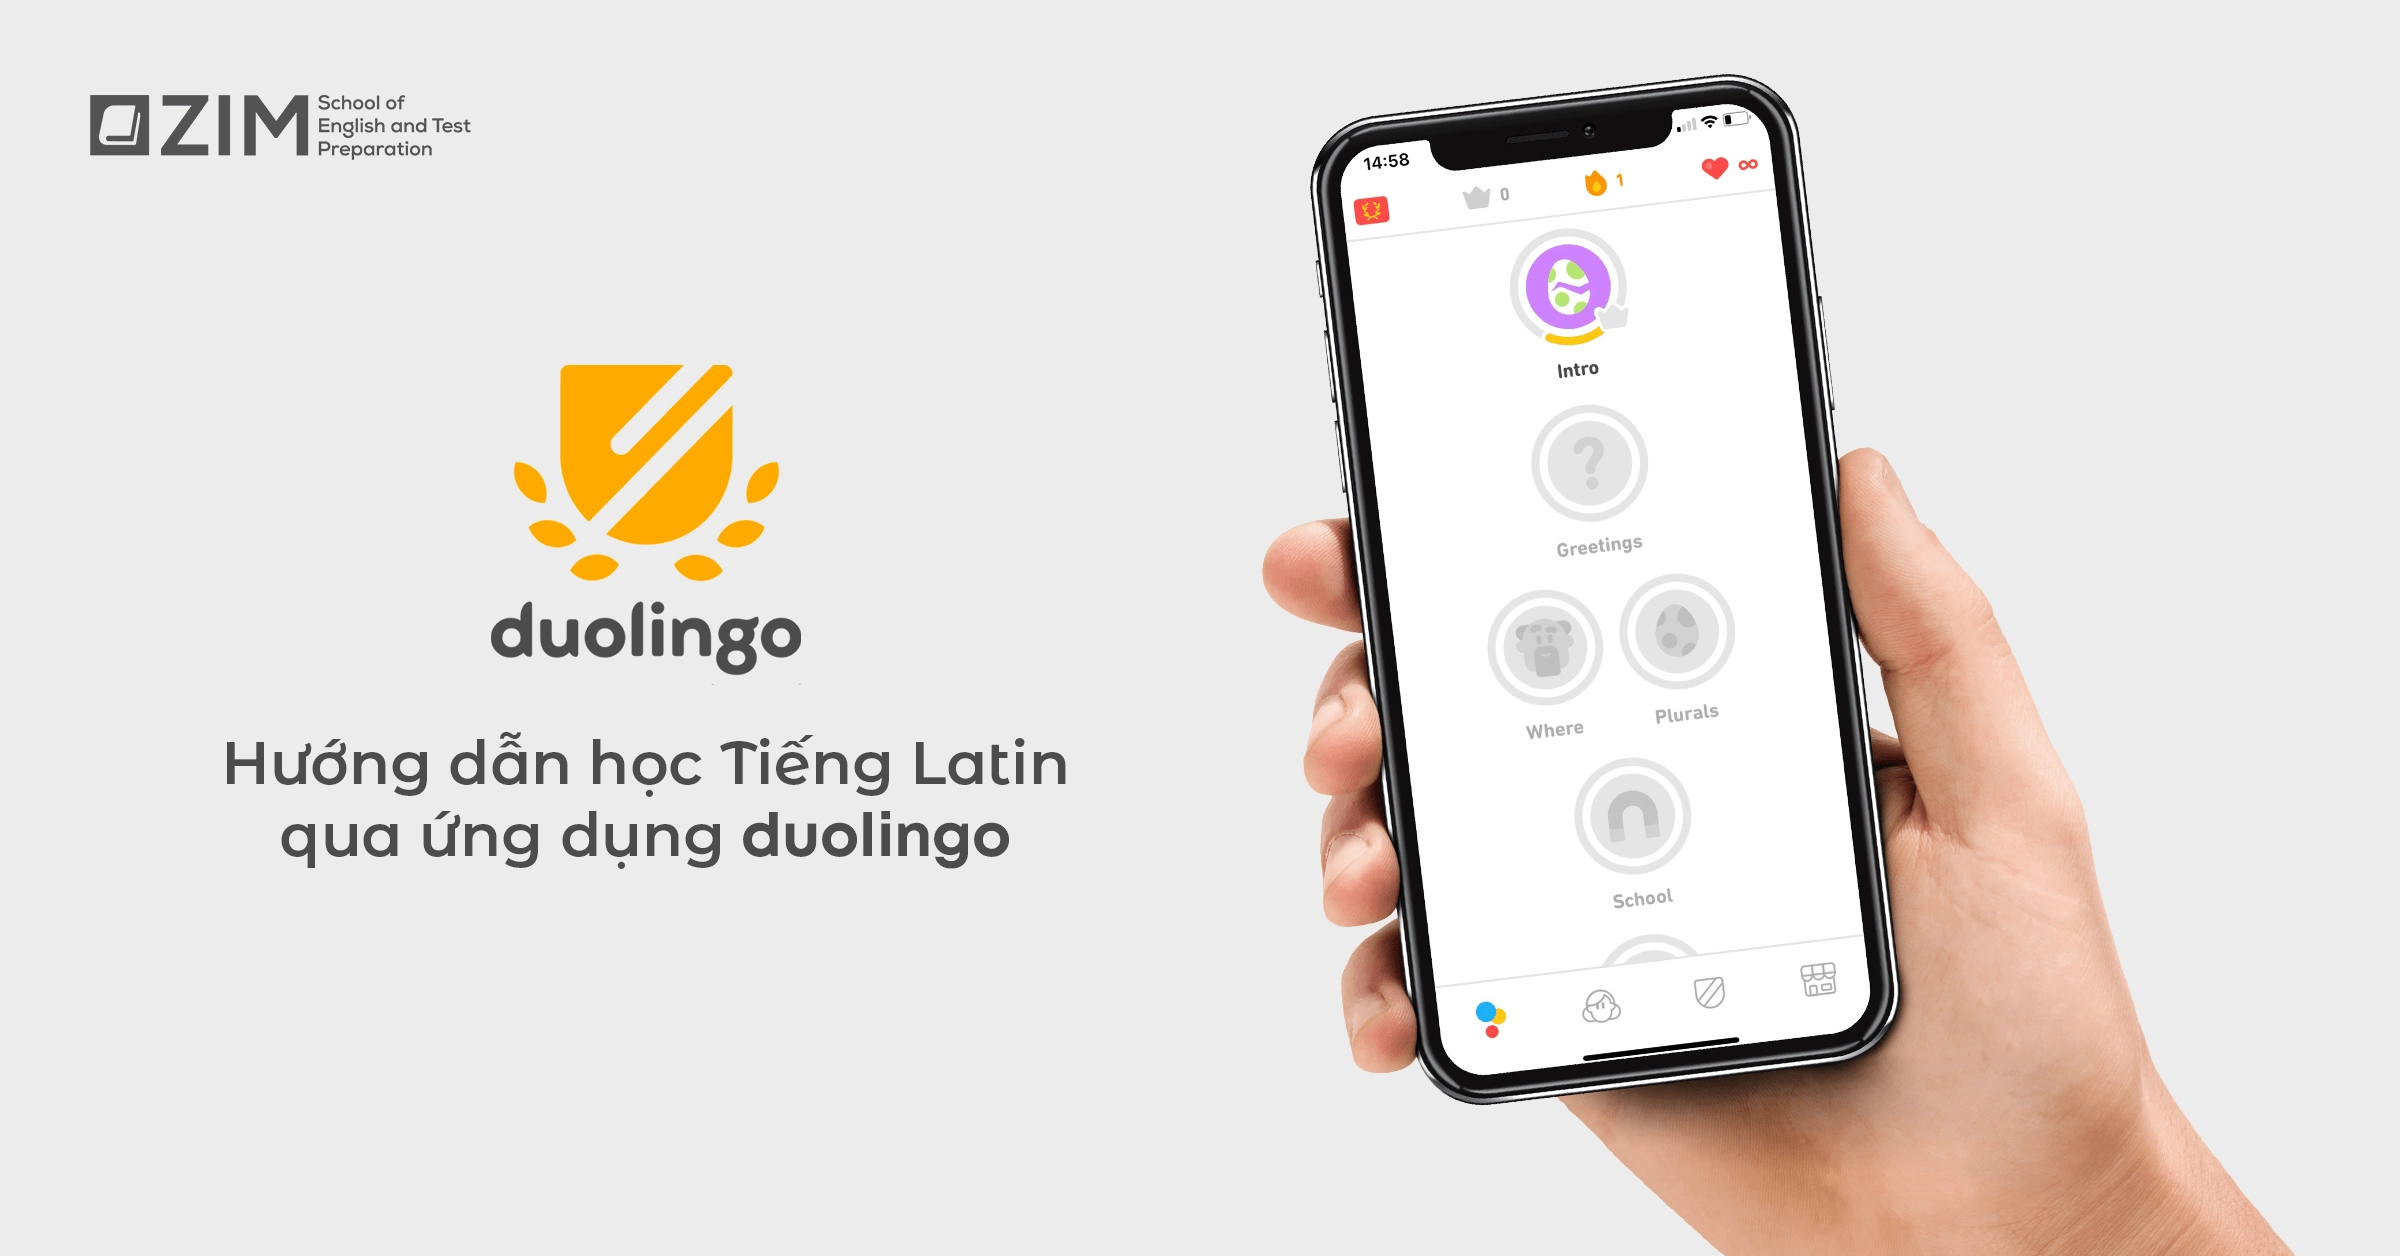 Hướng dẫn học tiếng Latin cơ bản qua ứng dụng Duolingo phiên bản tiếng Anh